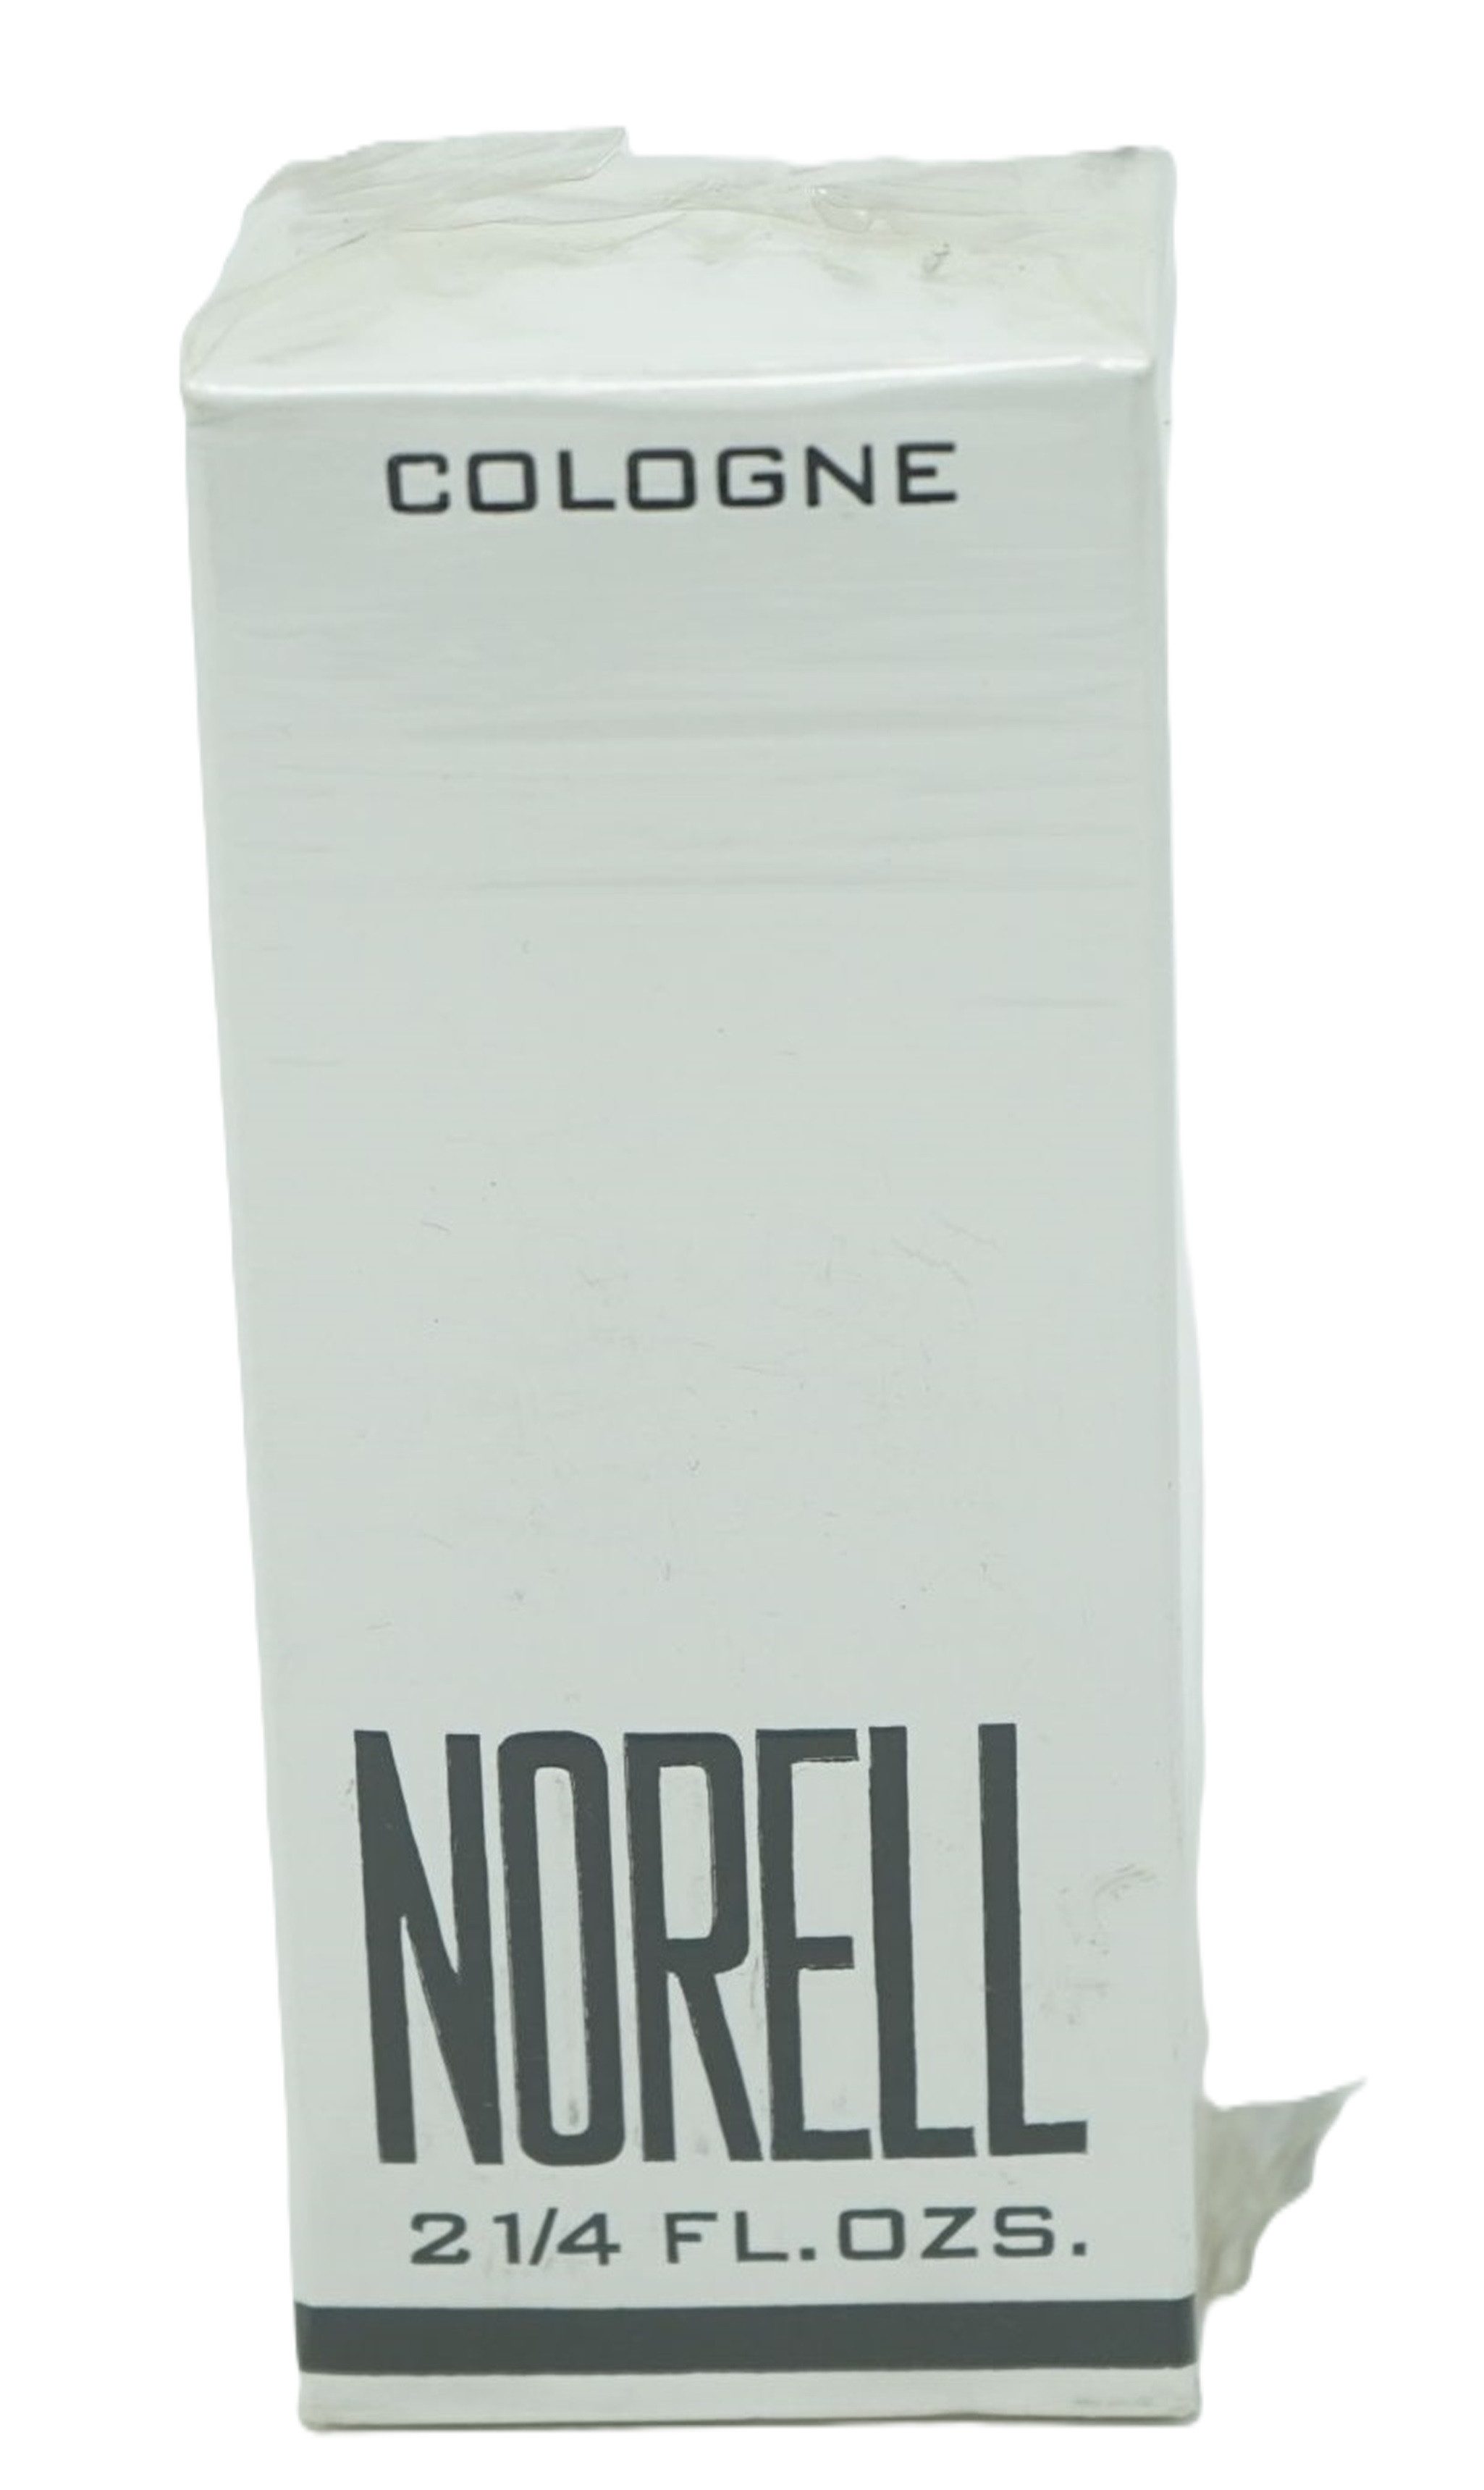 LAMBORGHINI Eau de Cologne Norell Perfume Cologne 63ml